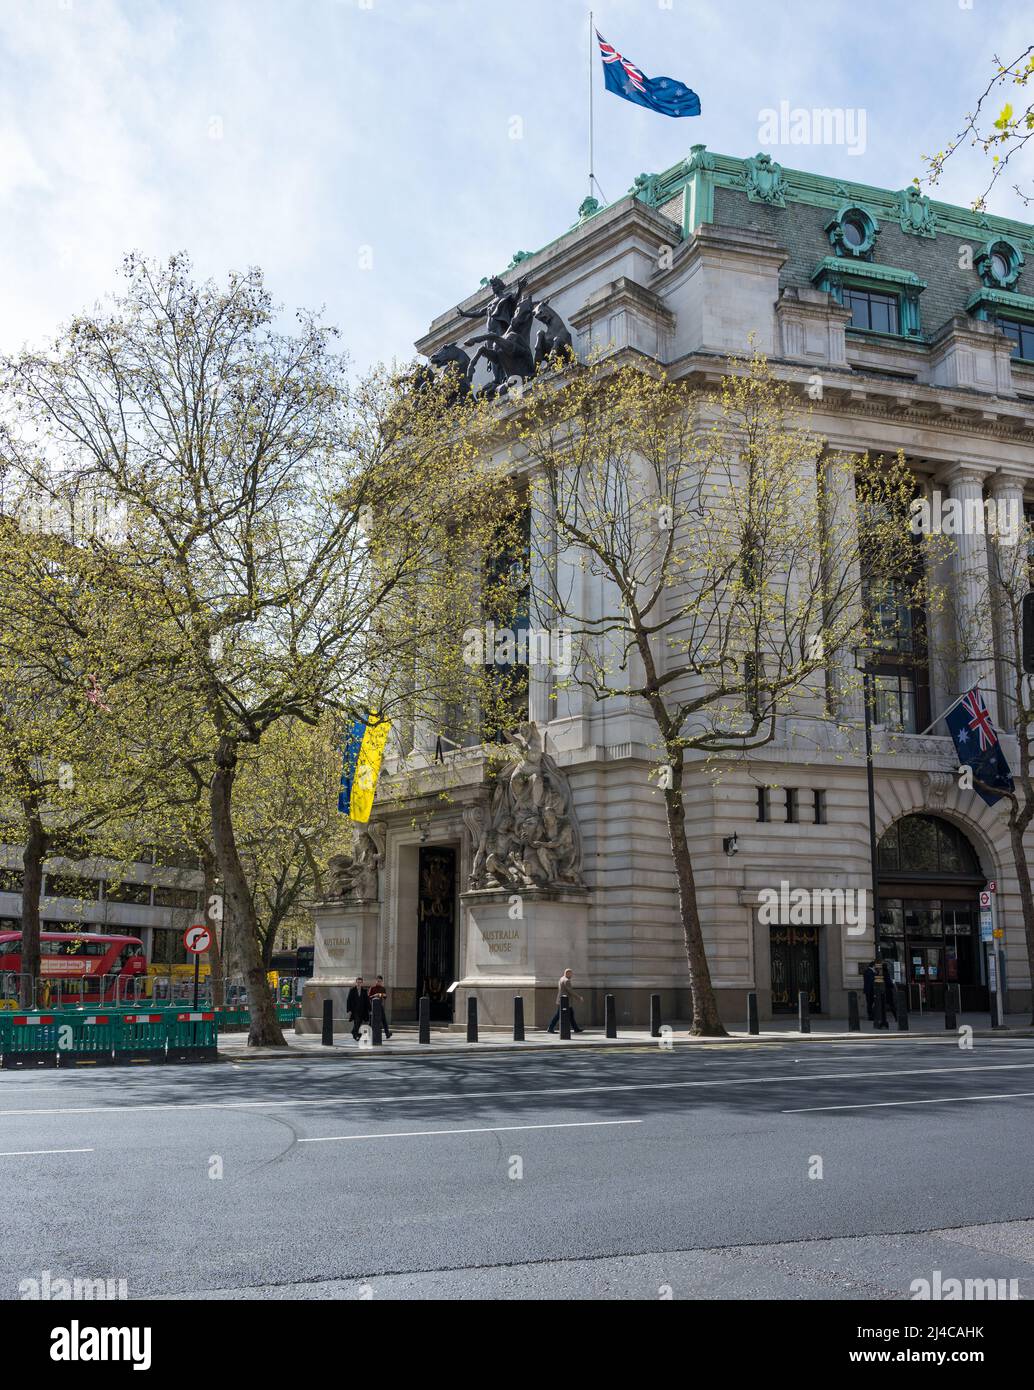 Australia House on Strand, Londres, Angleterre, Royaume-Uni. En solidarité avec l'Ukraine, le drapeau national ukrainien a été affiché au-dessus de l'entrée principale. Banque D'Images